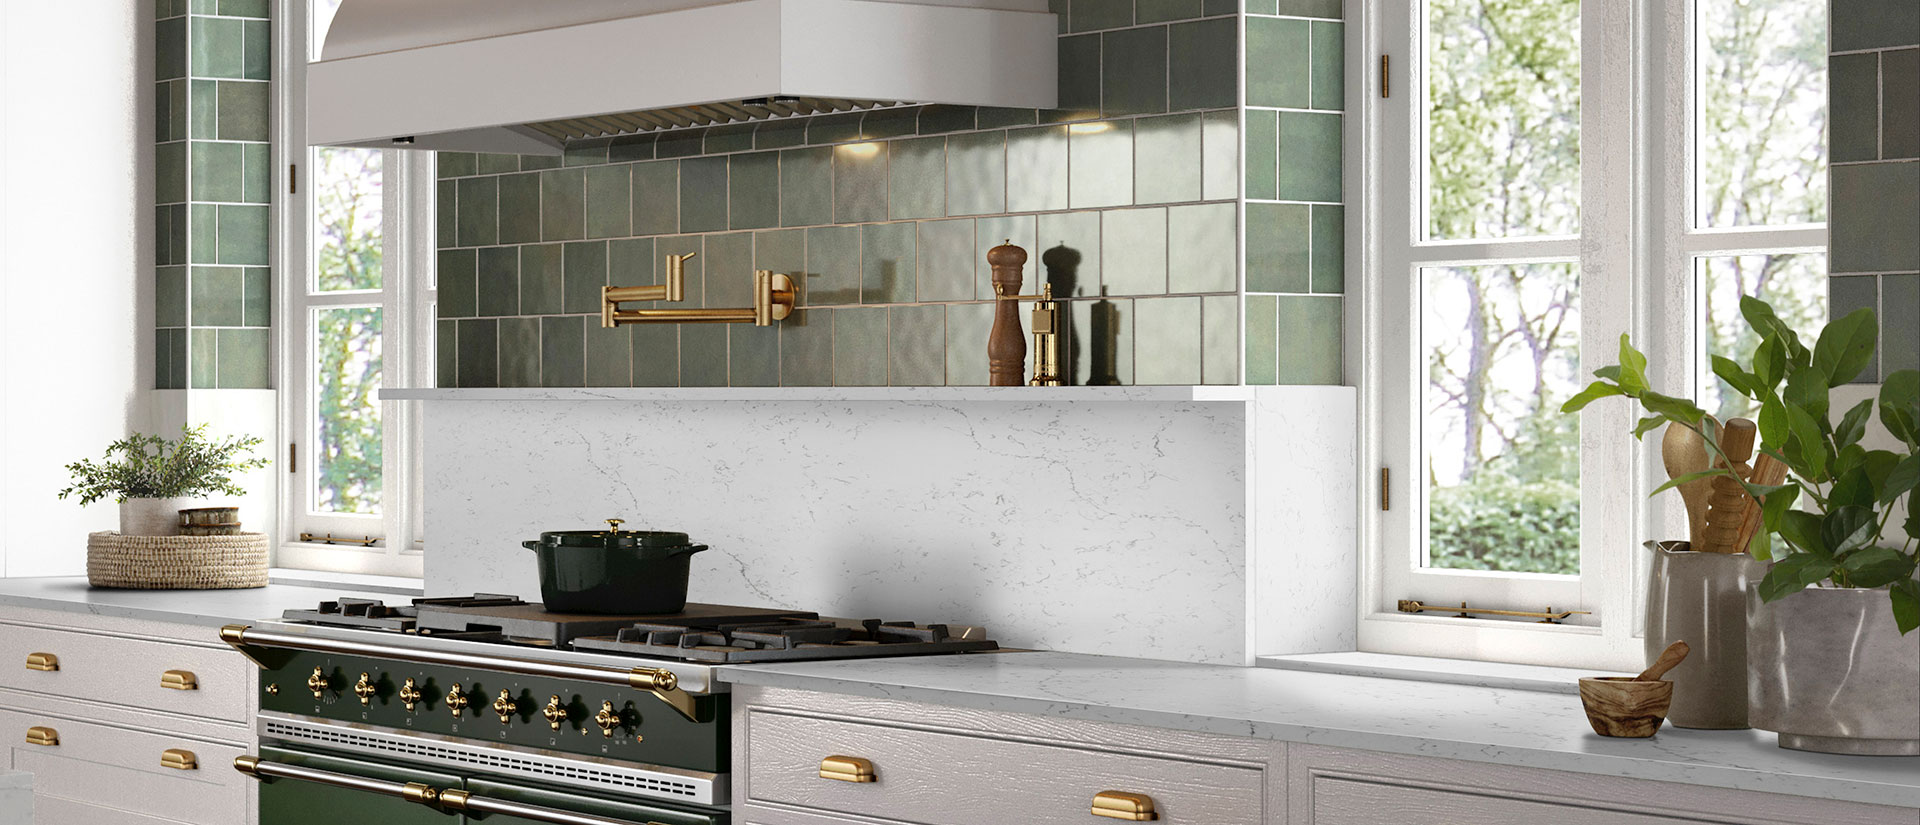 Calacatta Lavasa quartz countertop in a contemporary kitchen with white cabinets